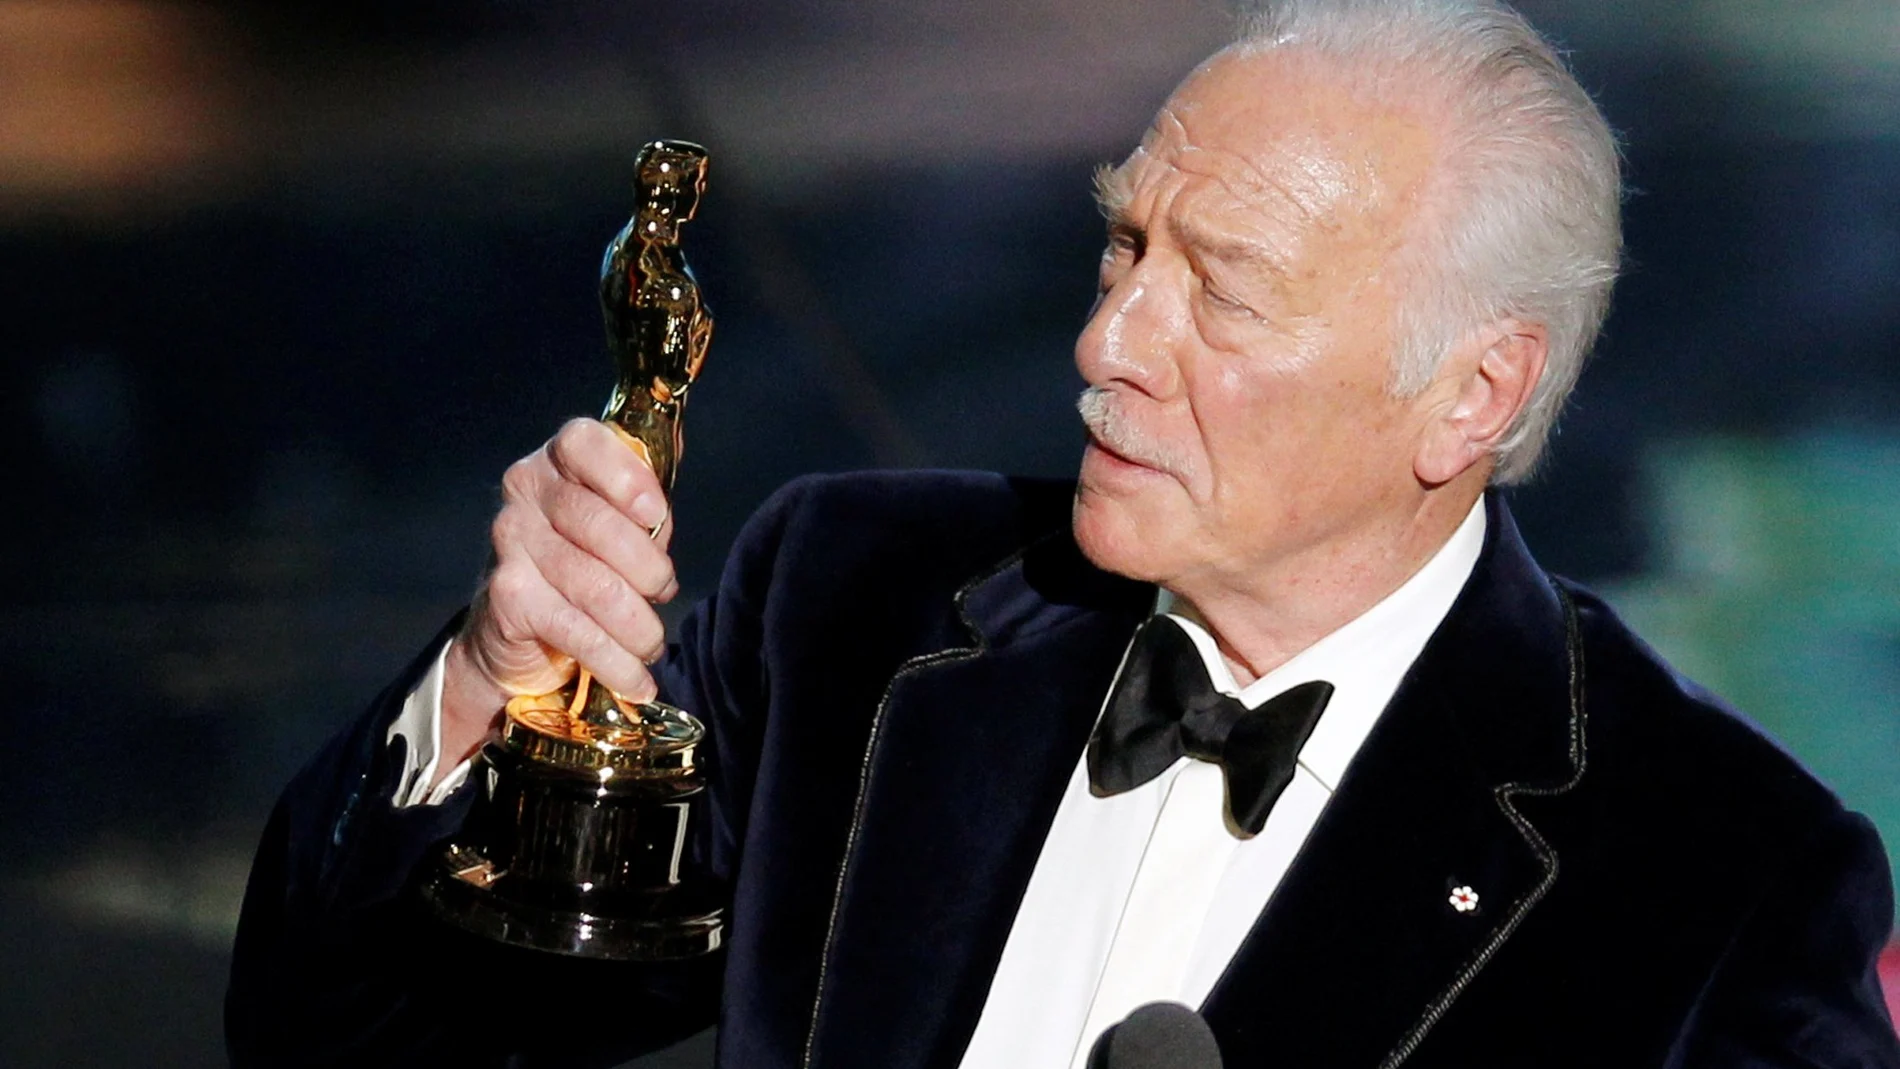 Christopher Plummer, fallecido hoy a los 91 años, recibiendo su Oscar por "Beginners", en la que actuaba junto a Ewan McGregor